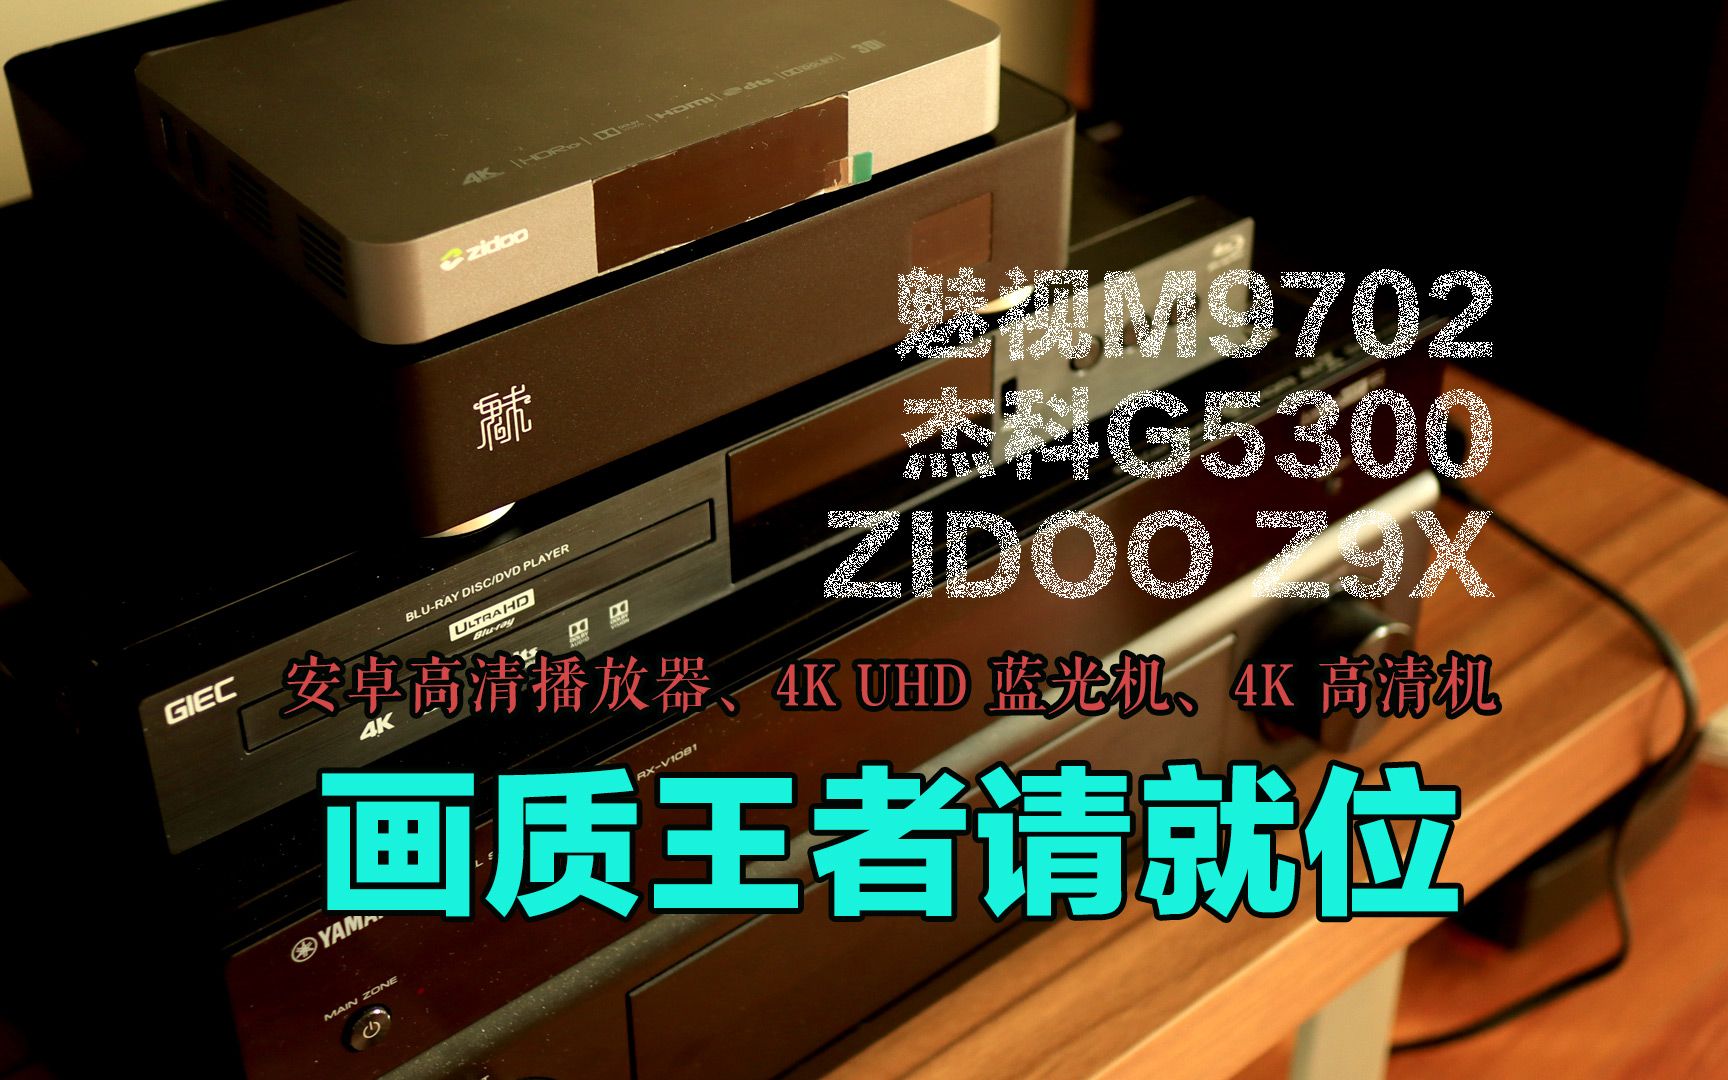 魅视m9702芝杜z9x和杰科g5300高清机购买指南,谁的画质更出色